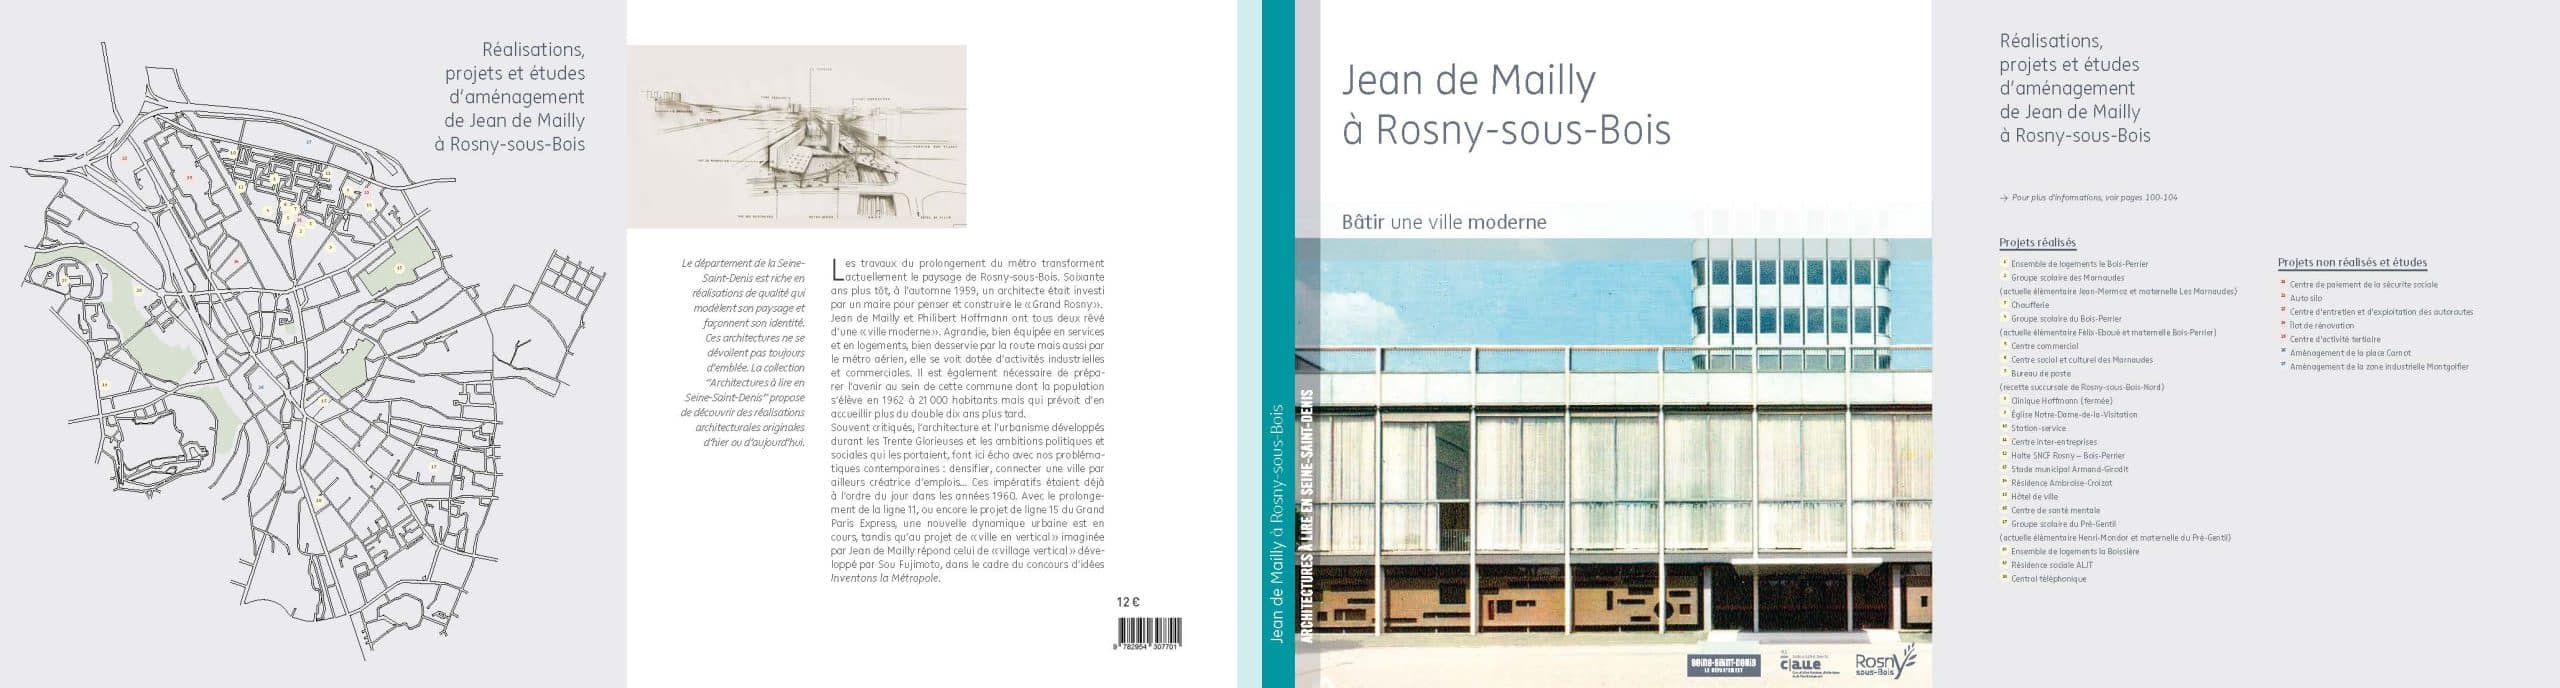 Couverture et 4e de couverture de l'ouvrage Jean de Mailly à Rosny-sous-Bois construire une ville moderne